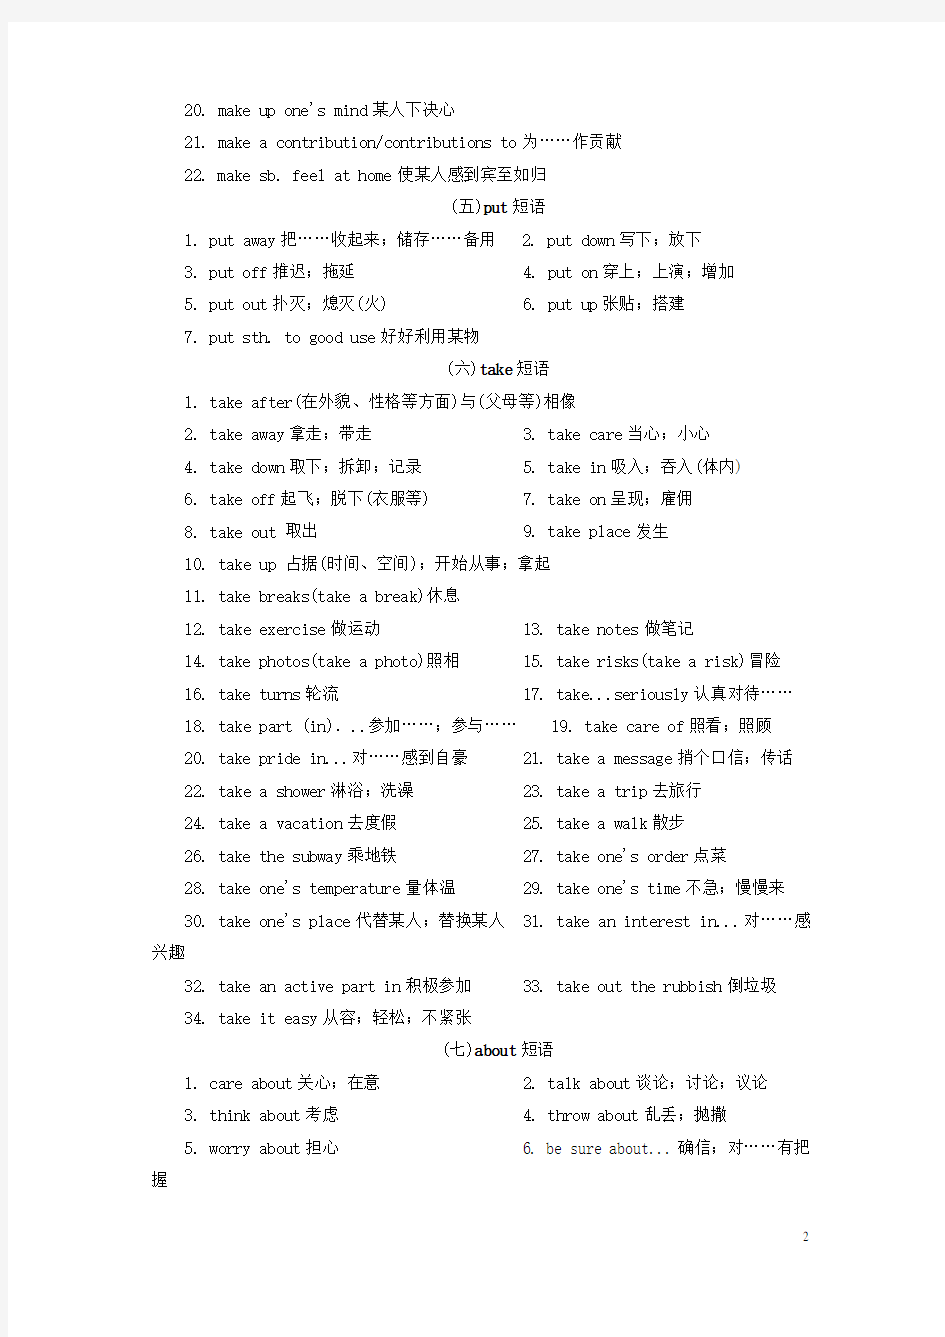 河南省中考英语总复习 早读材料 短语